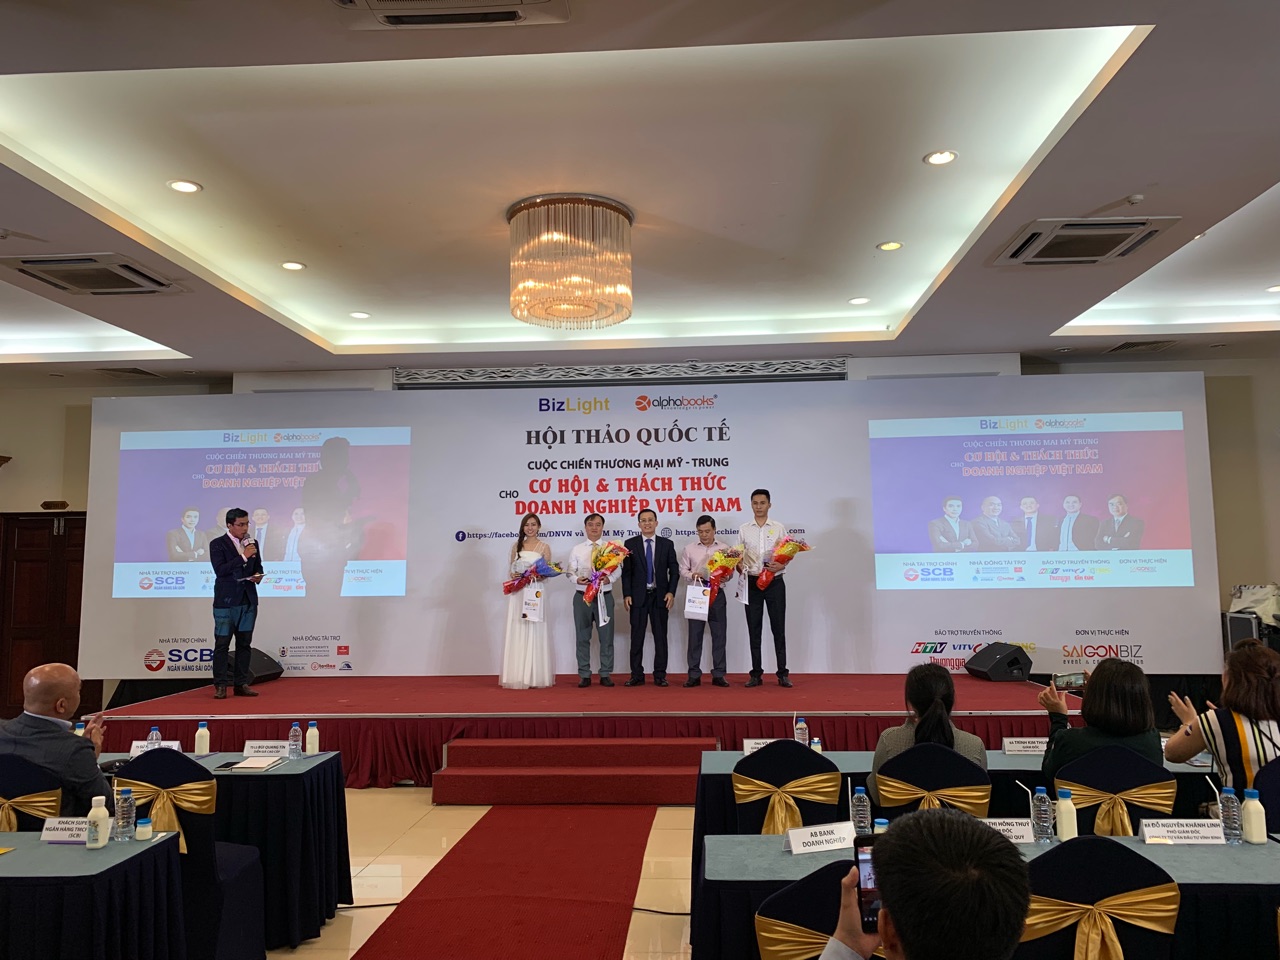 SCB là nhà tài trợ chính của Hội thảo “Cuộc chiến thương mại Mỹ - Trung: Cơ hội và thách thức cho doanh nghiệp Việt Nam”